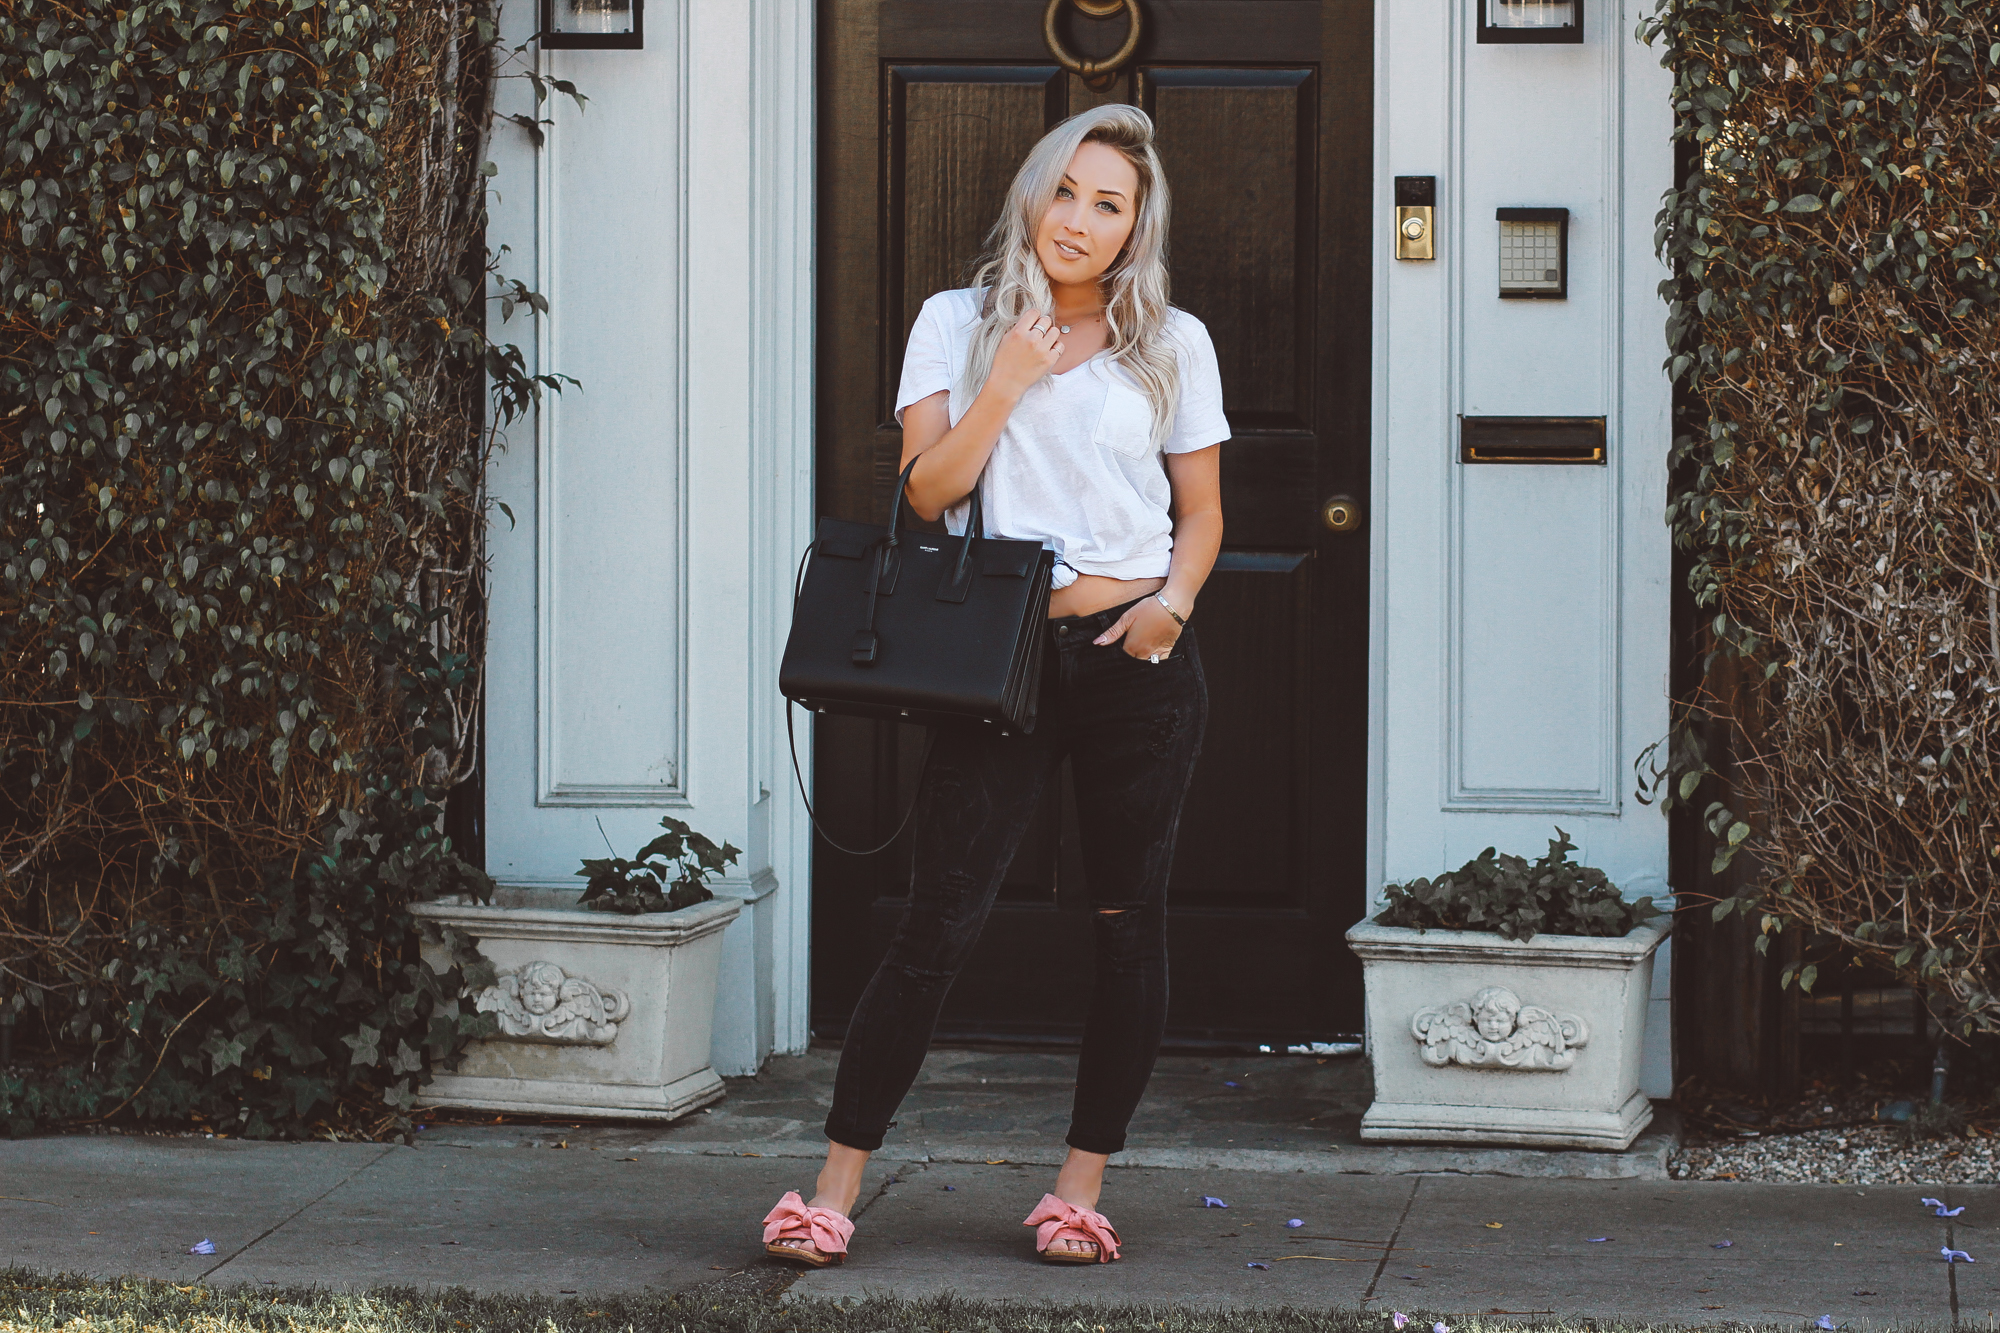 Blondie in the City | YSL Bag | Saint Laurent Sac De Jour Bag | Pink Shoes 